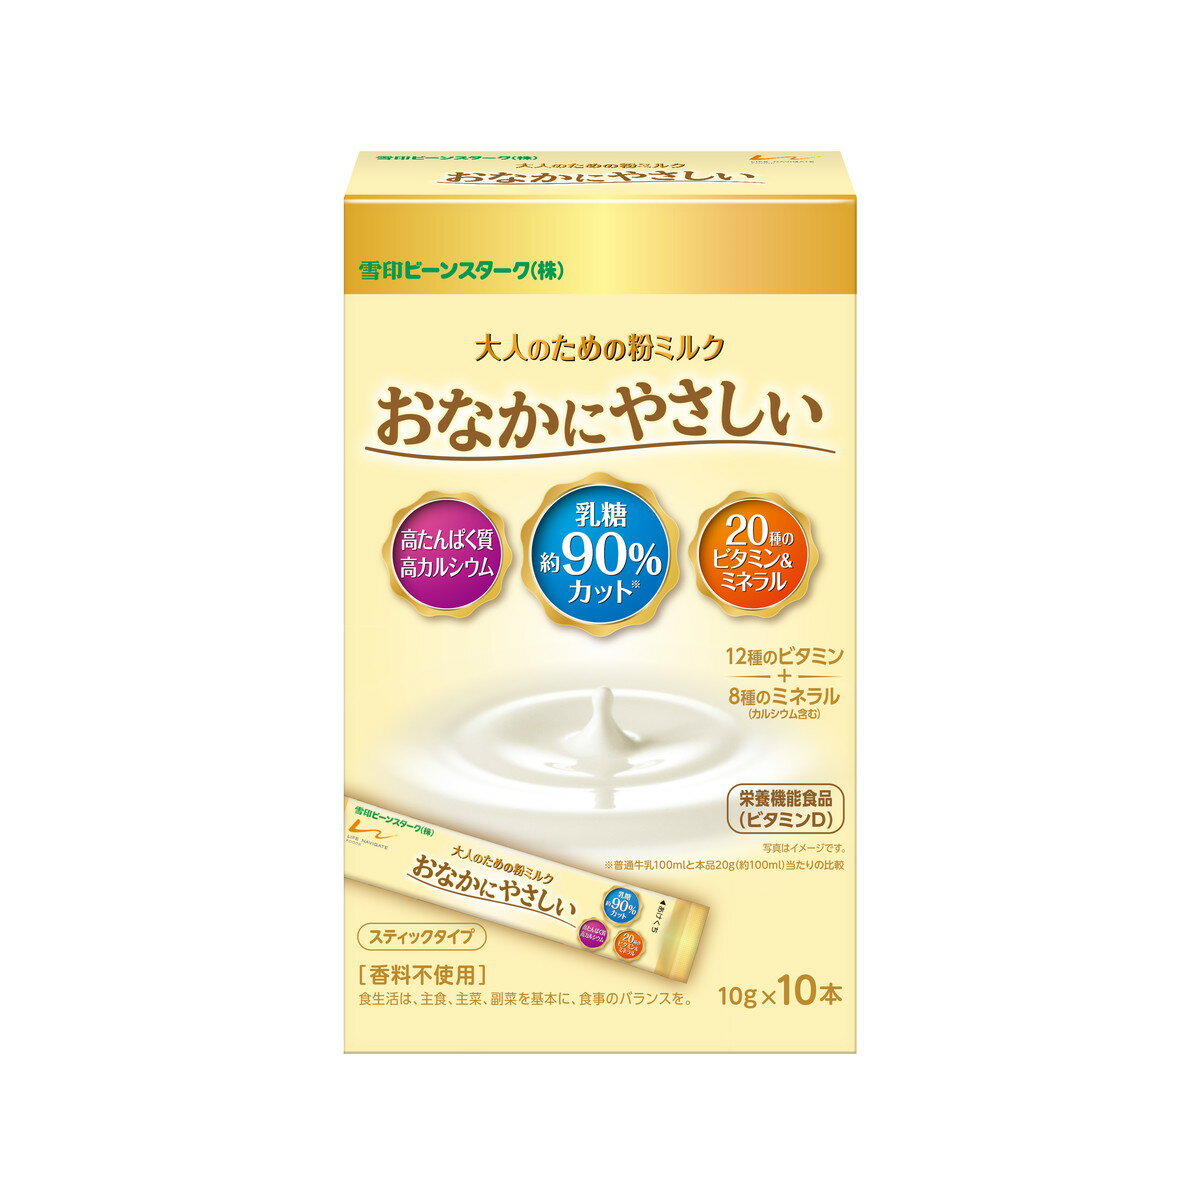 【送料込】ビーンスターク 大人のための粉ミルク おなかにやさしい スティックタイプ 10本入 栄養機能食品 1個